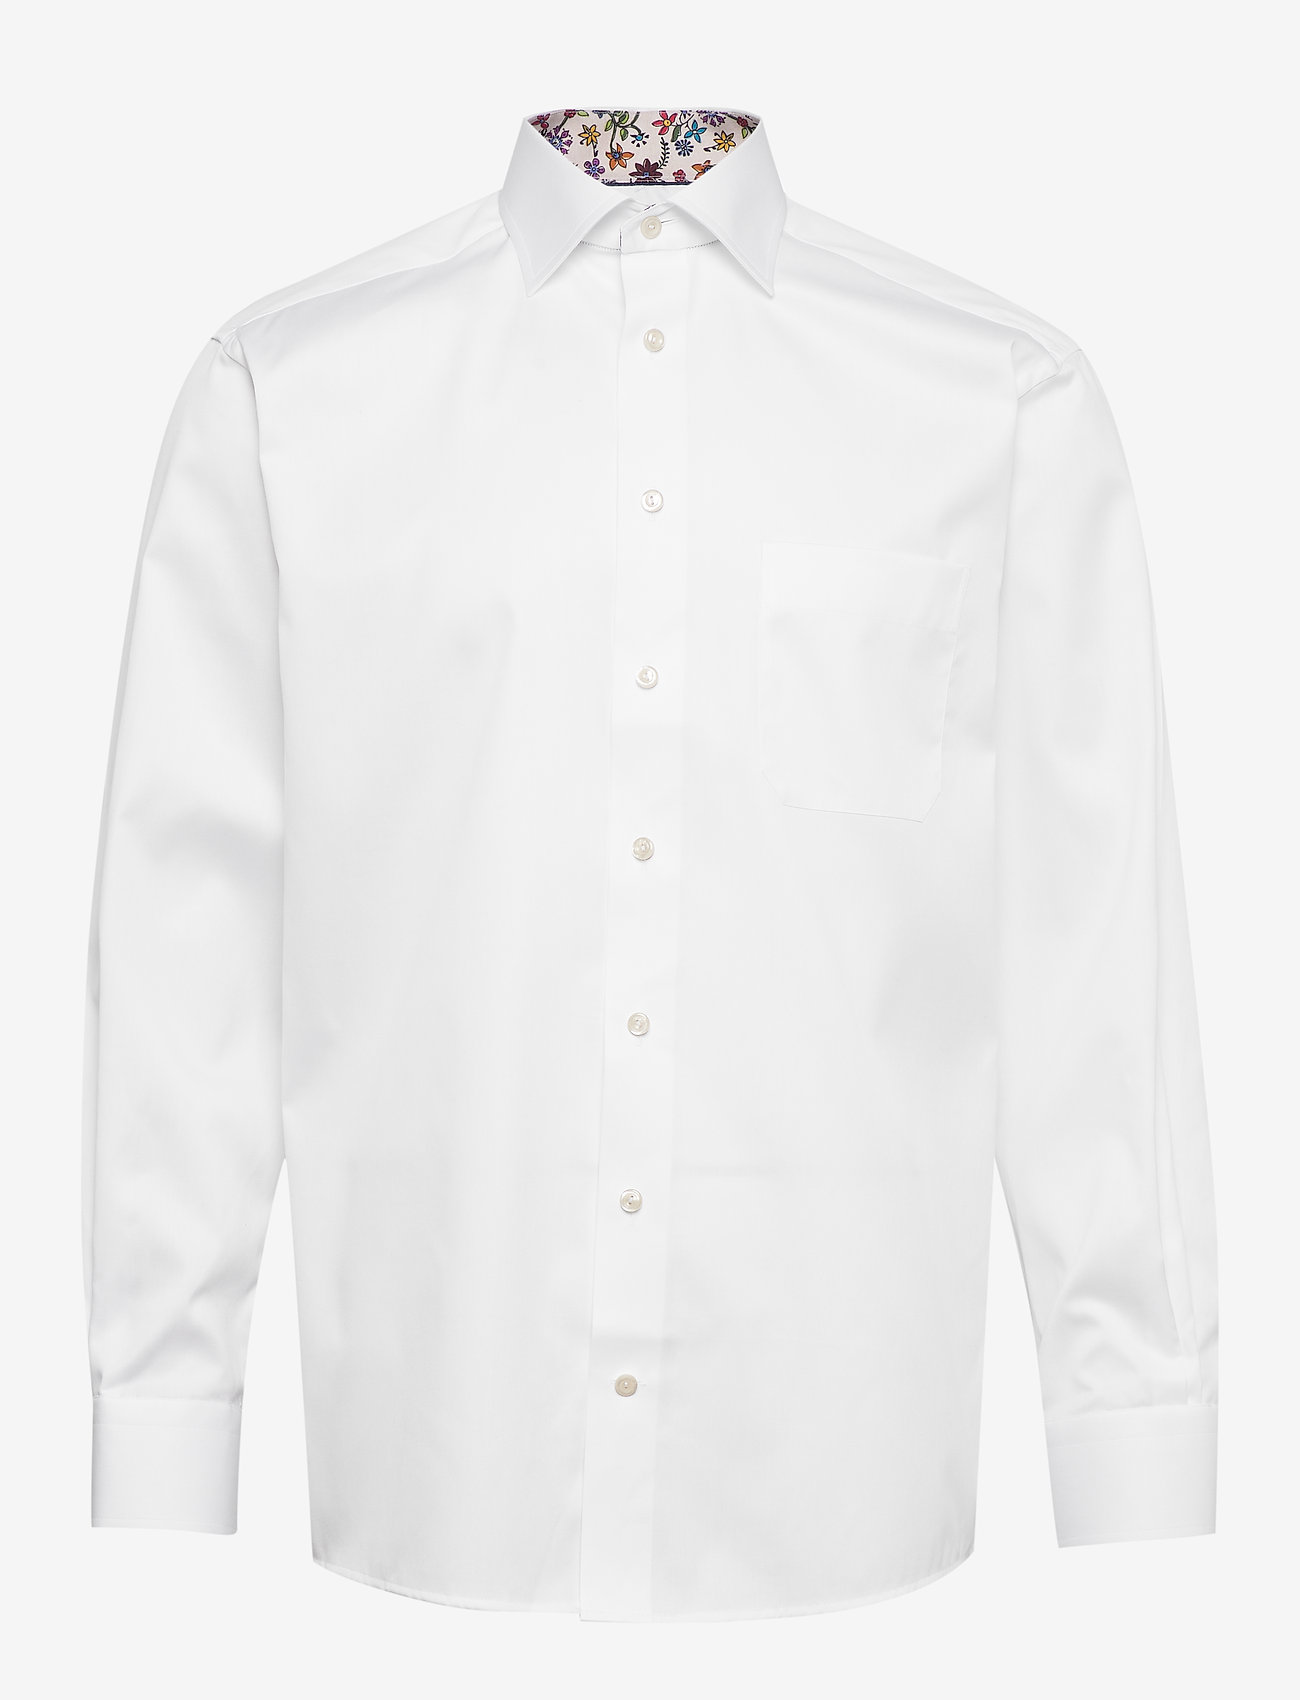 White Twill Shirt Flower Details White 60445 Kr Eton